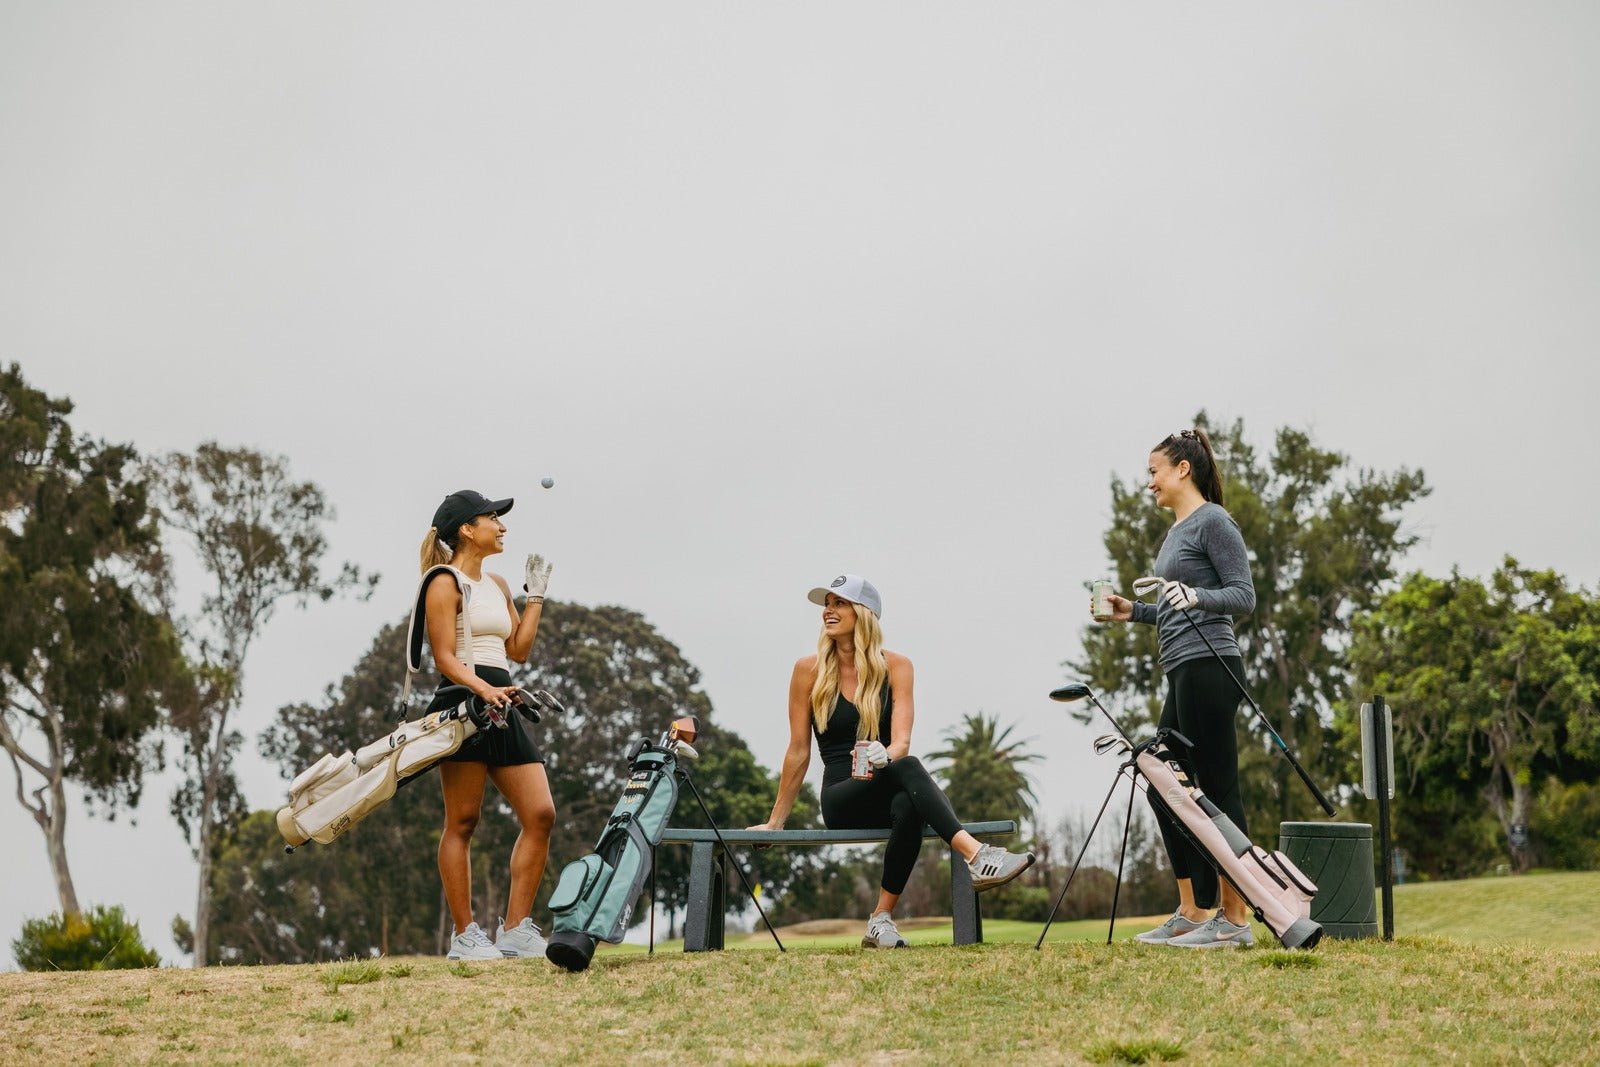 Women's Golf Day, Titleist Women's Golf Equipment